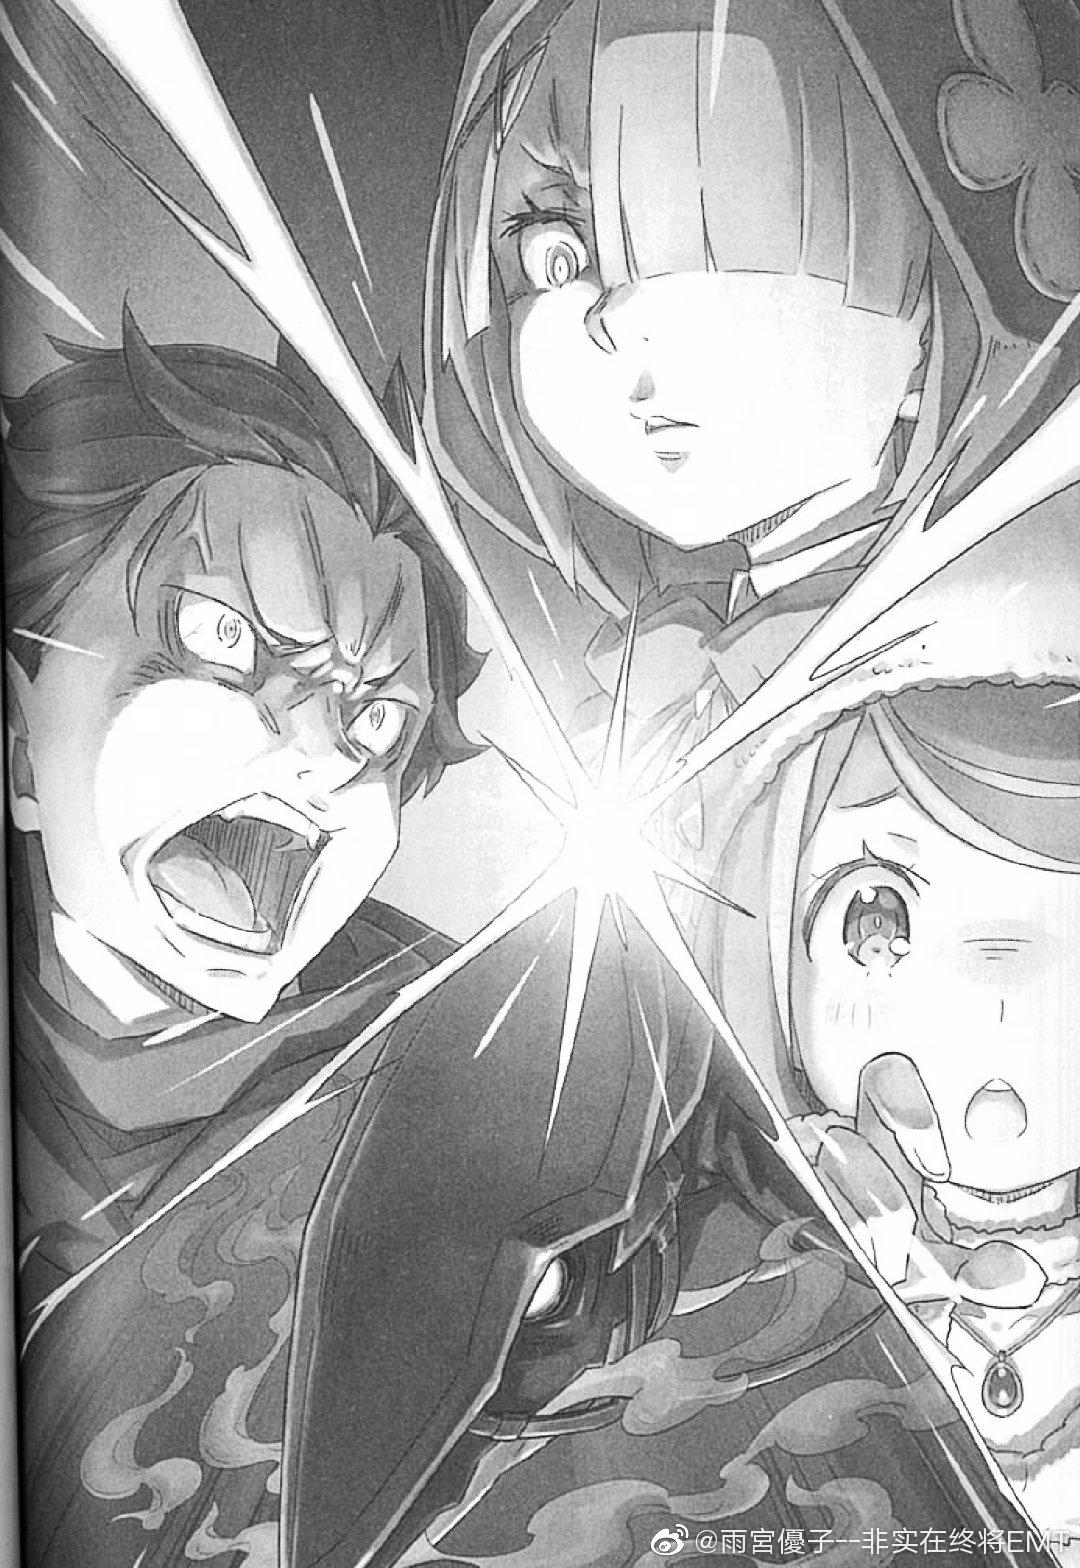 Re:Zero Light Novel Volume 1  Anime, Anime art dark, Dark anime